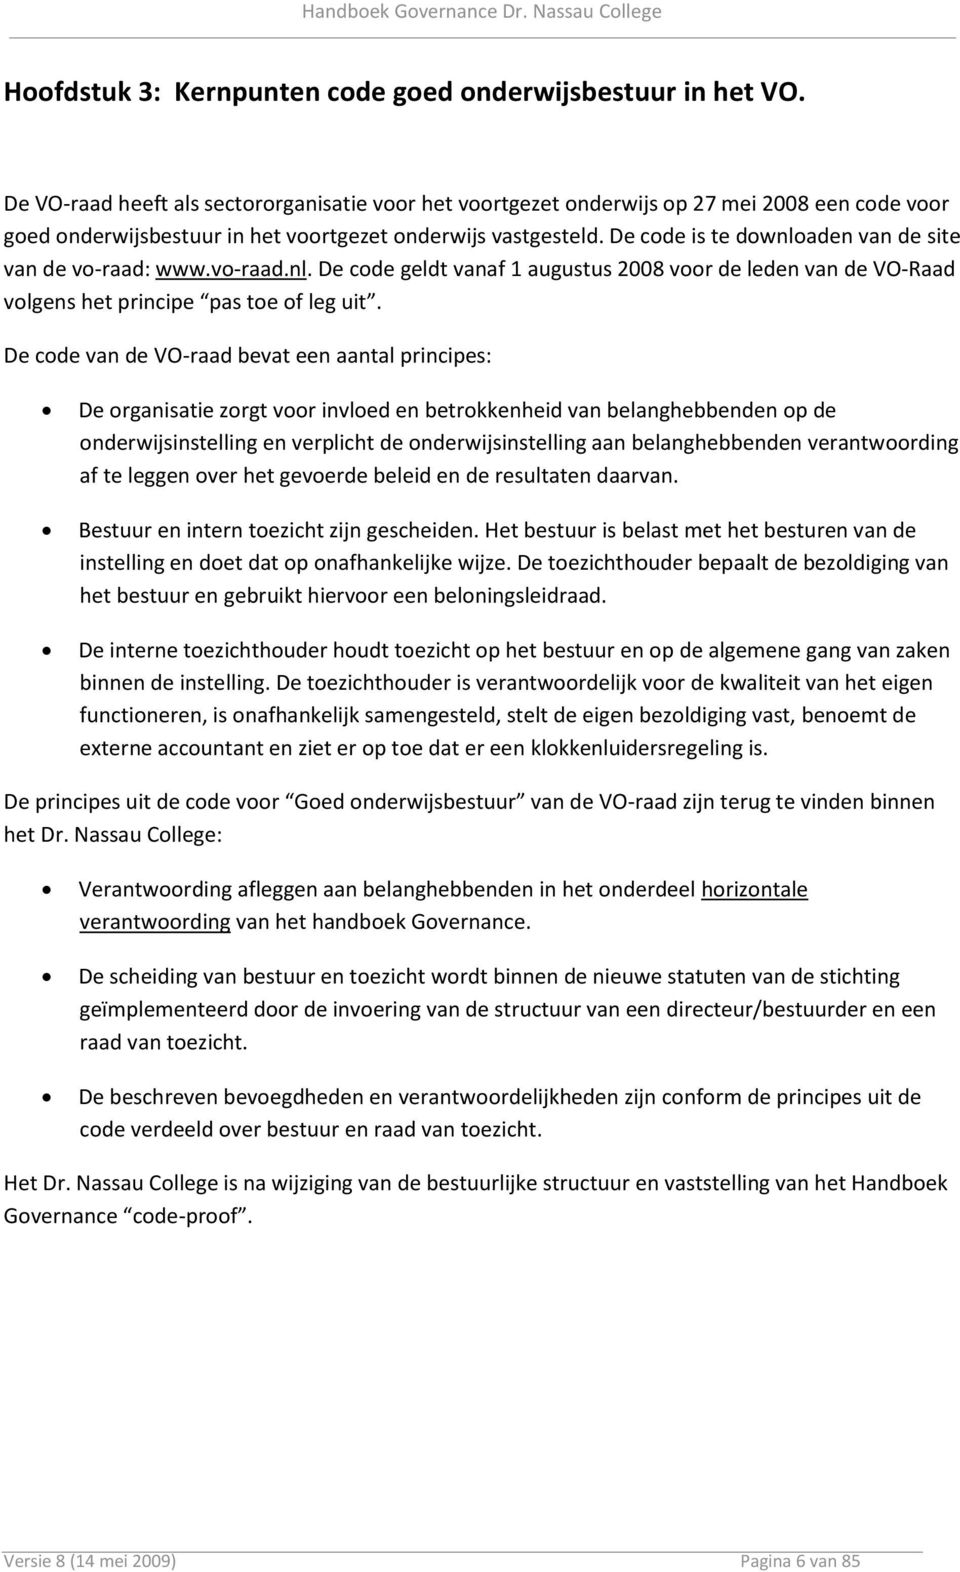 De code is te downloaden van de site van de vo-raad: www.vo-raad.nl. De code geldt vanaf 1 augustus 2008 voor de leden van de VO-Raad volgens het principe pas toe of leg uit.